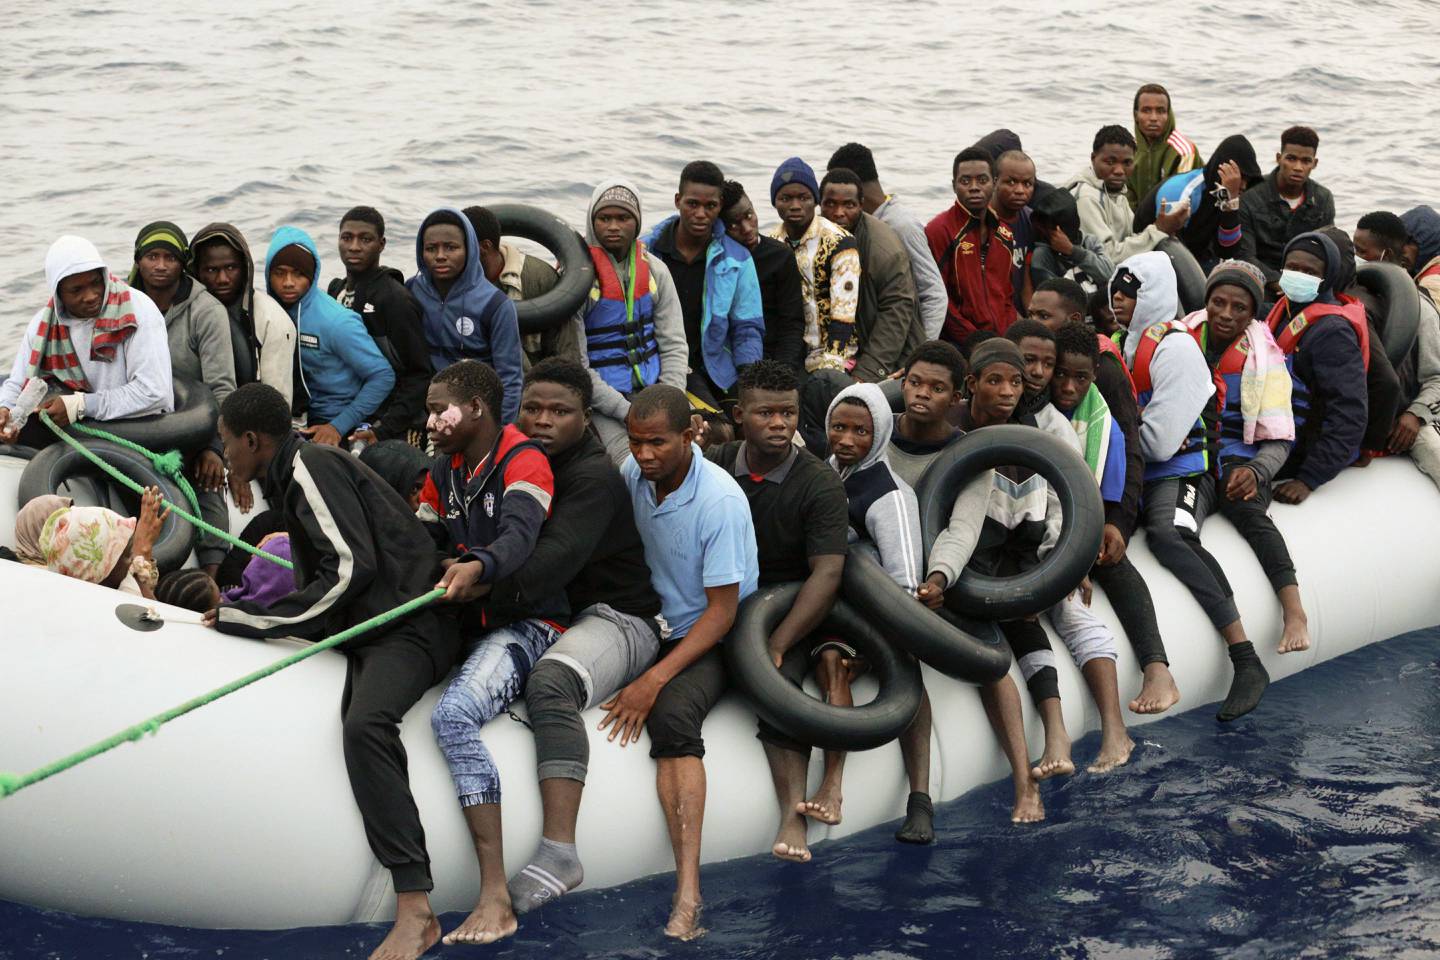 Migranter blir brakt til land etter å ha blitt pågrepet av den libyske kystvakten i Middelhavet, i Garaboli Libya, 18. oktober 2021. I en konfidensiell militær EU-rapport går det fram at EU fortsatt ønsker å støtte og lære opp Libyas kystvakt og marine – til tross for mange rapporter om voldsbruk og mishandling i interneringssentre i Libya. Arkivfoto: Yousef Murad / AP / NTB